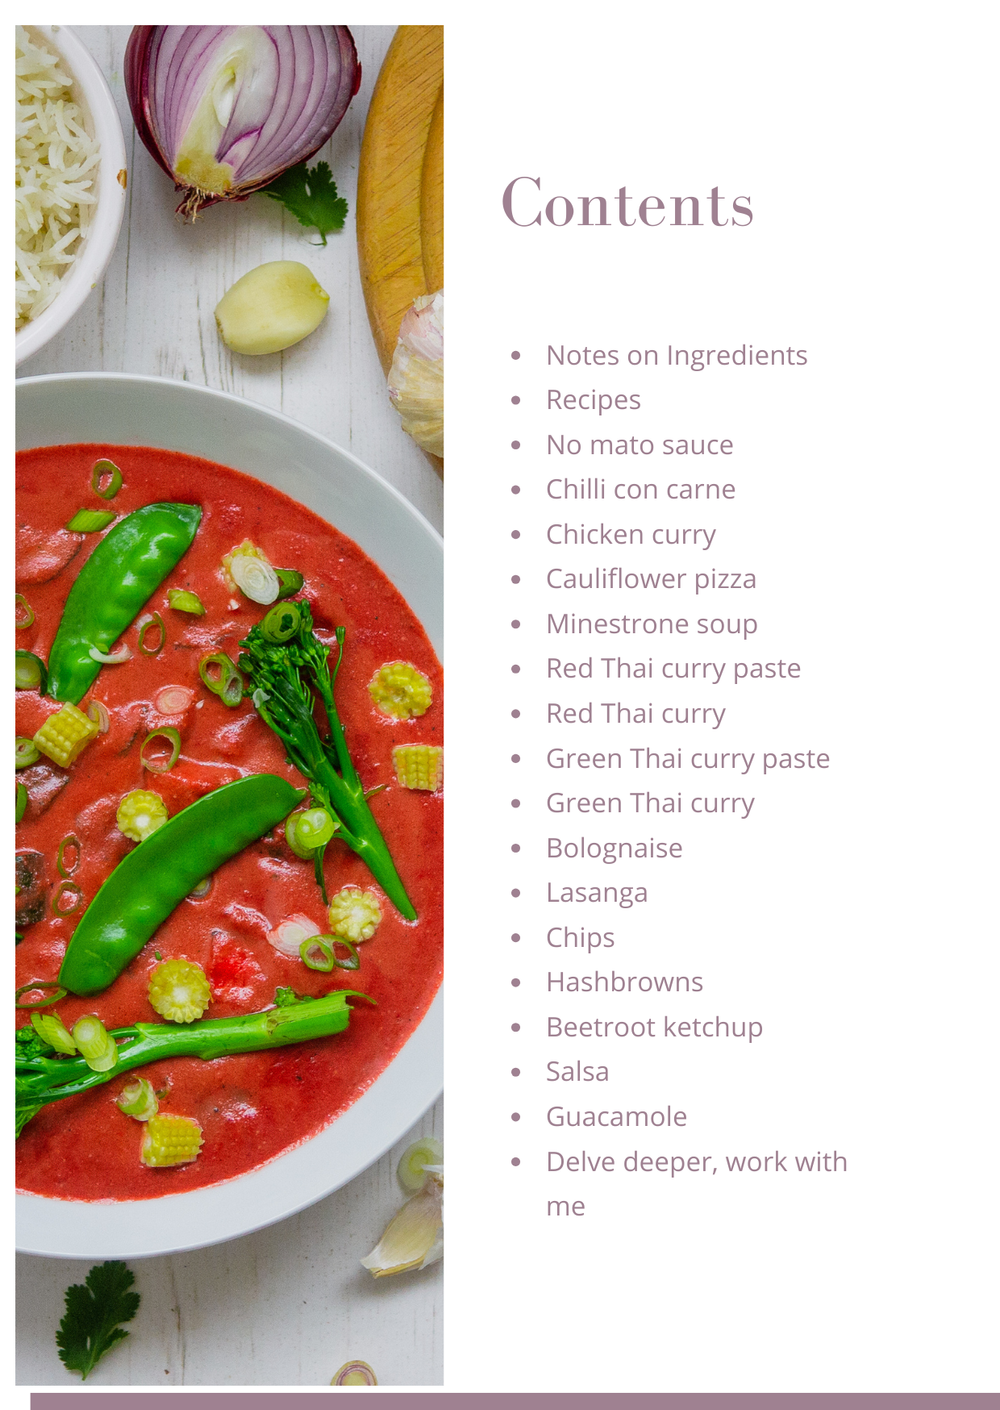 Recipes in the cookbook